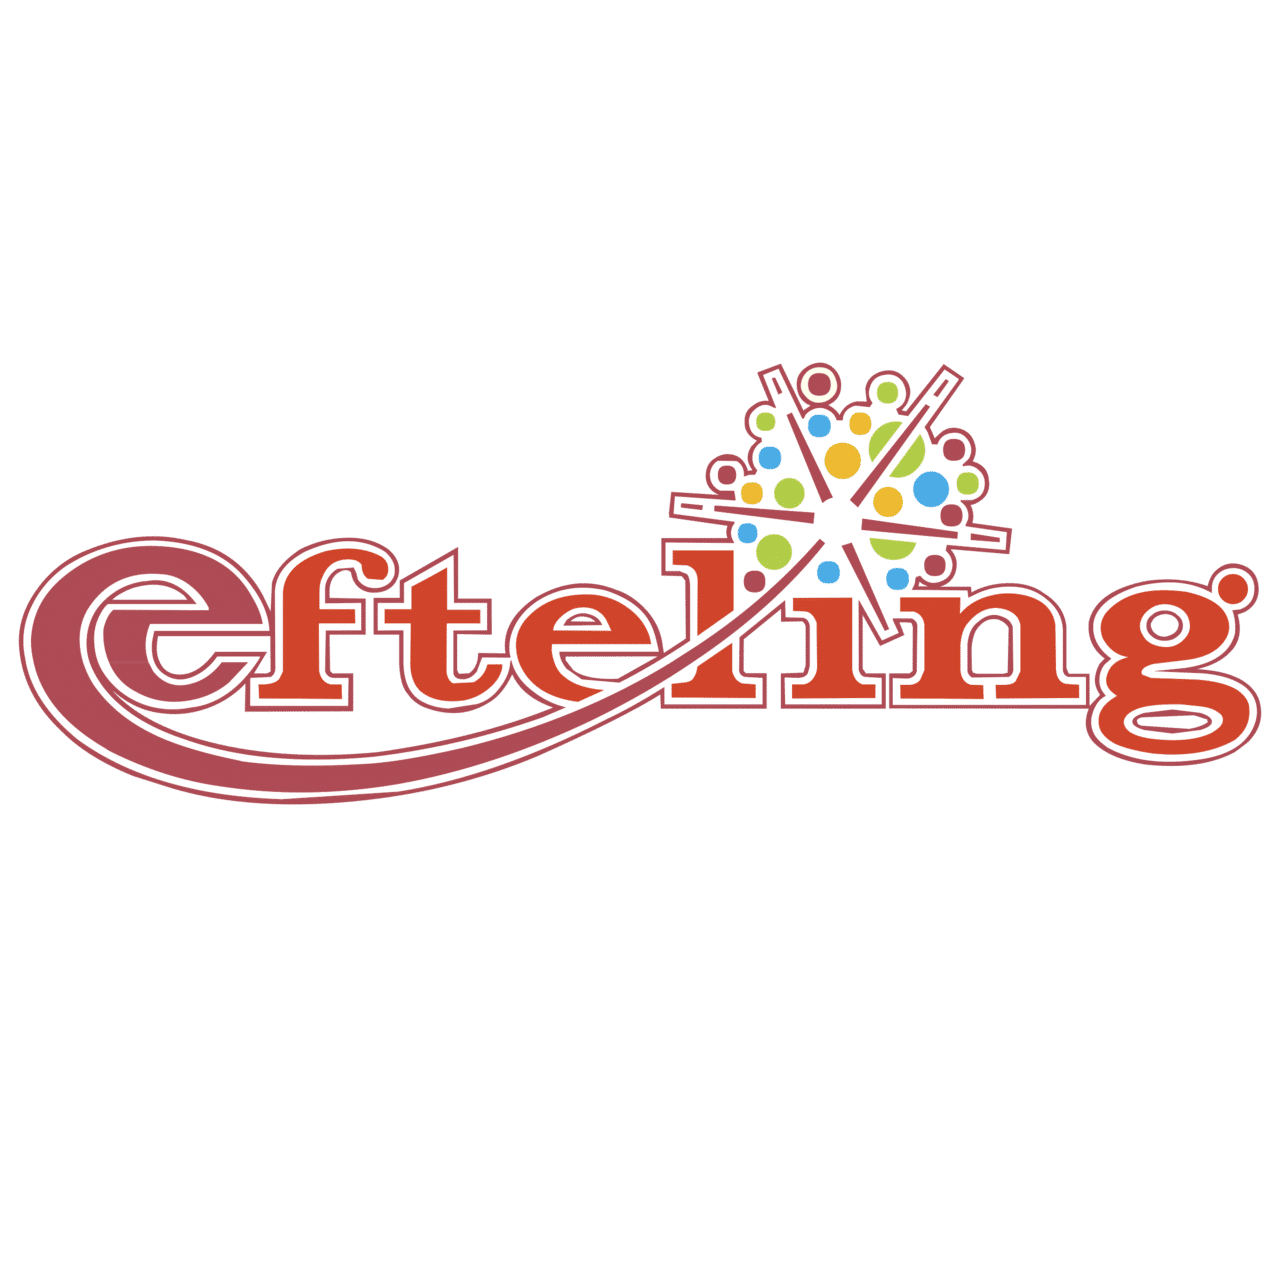 efteling-logo.png